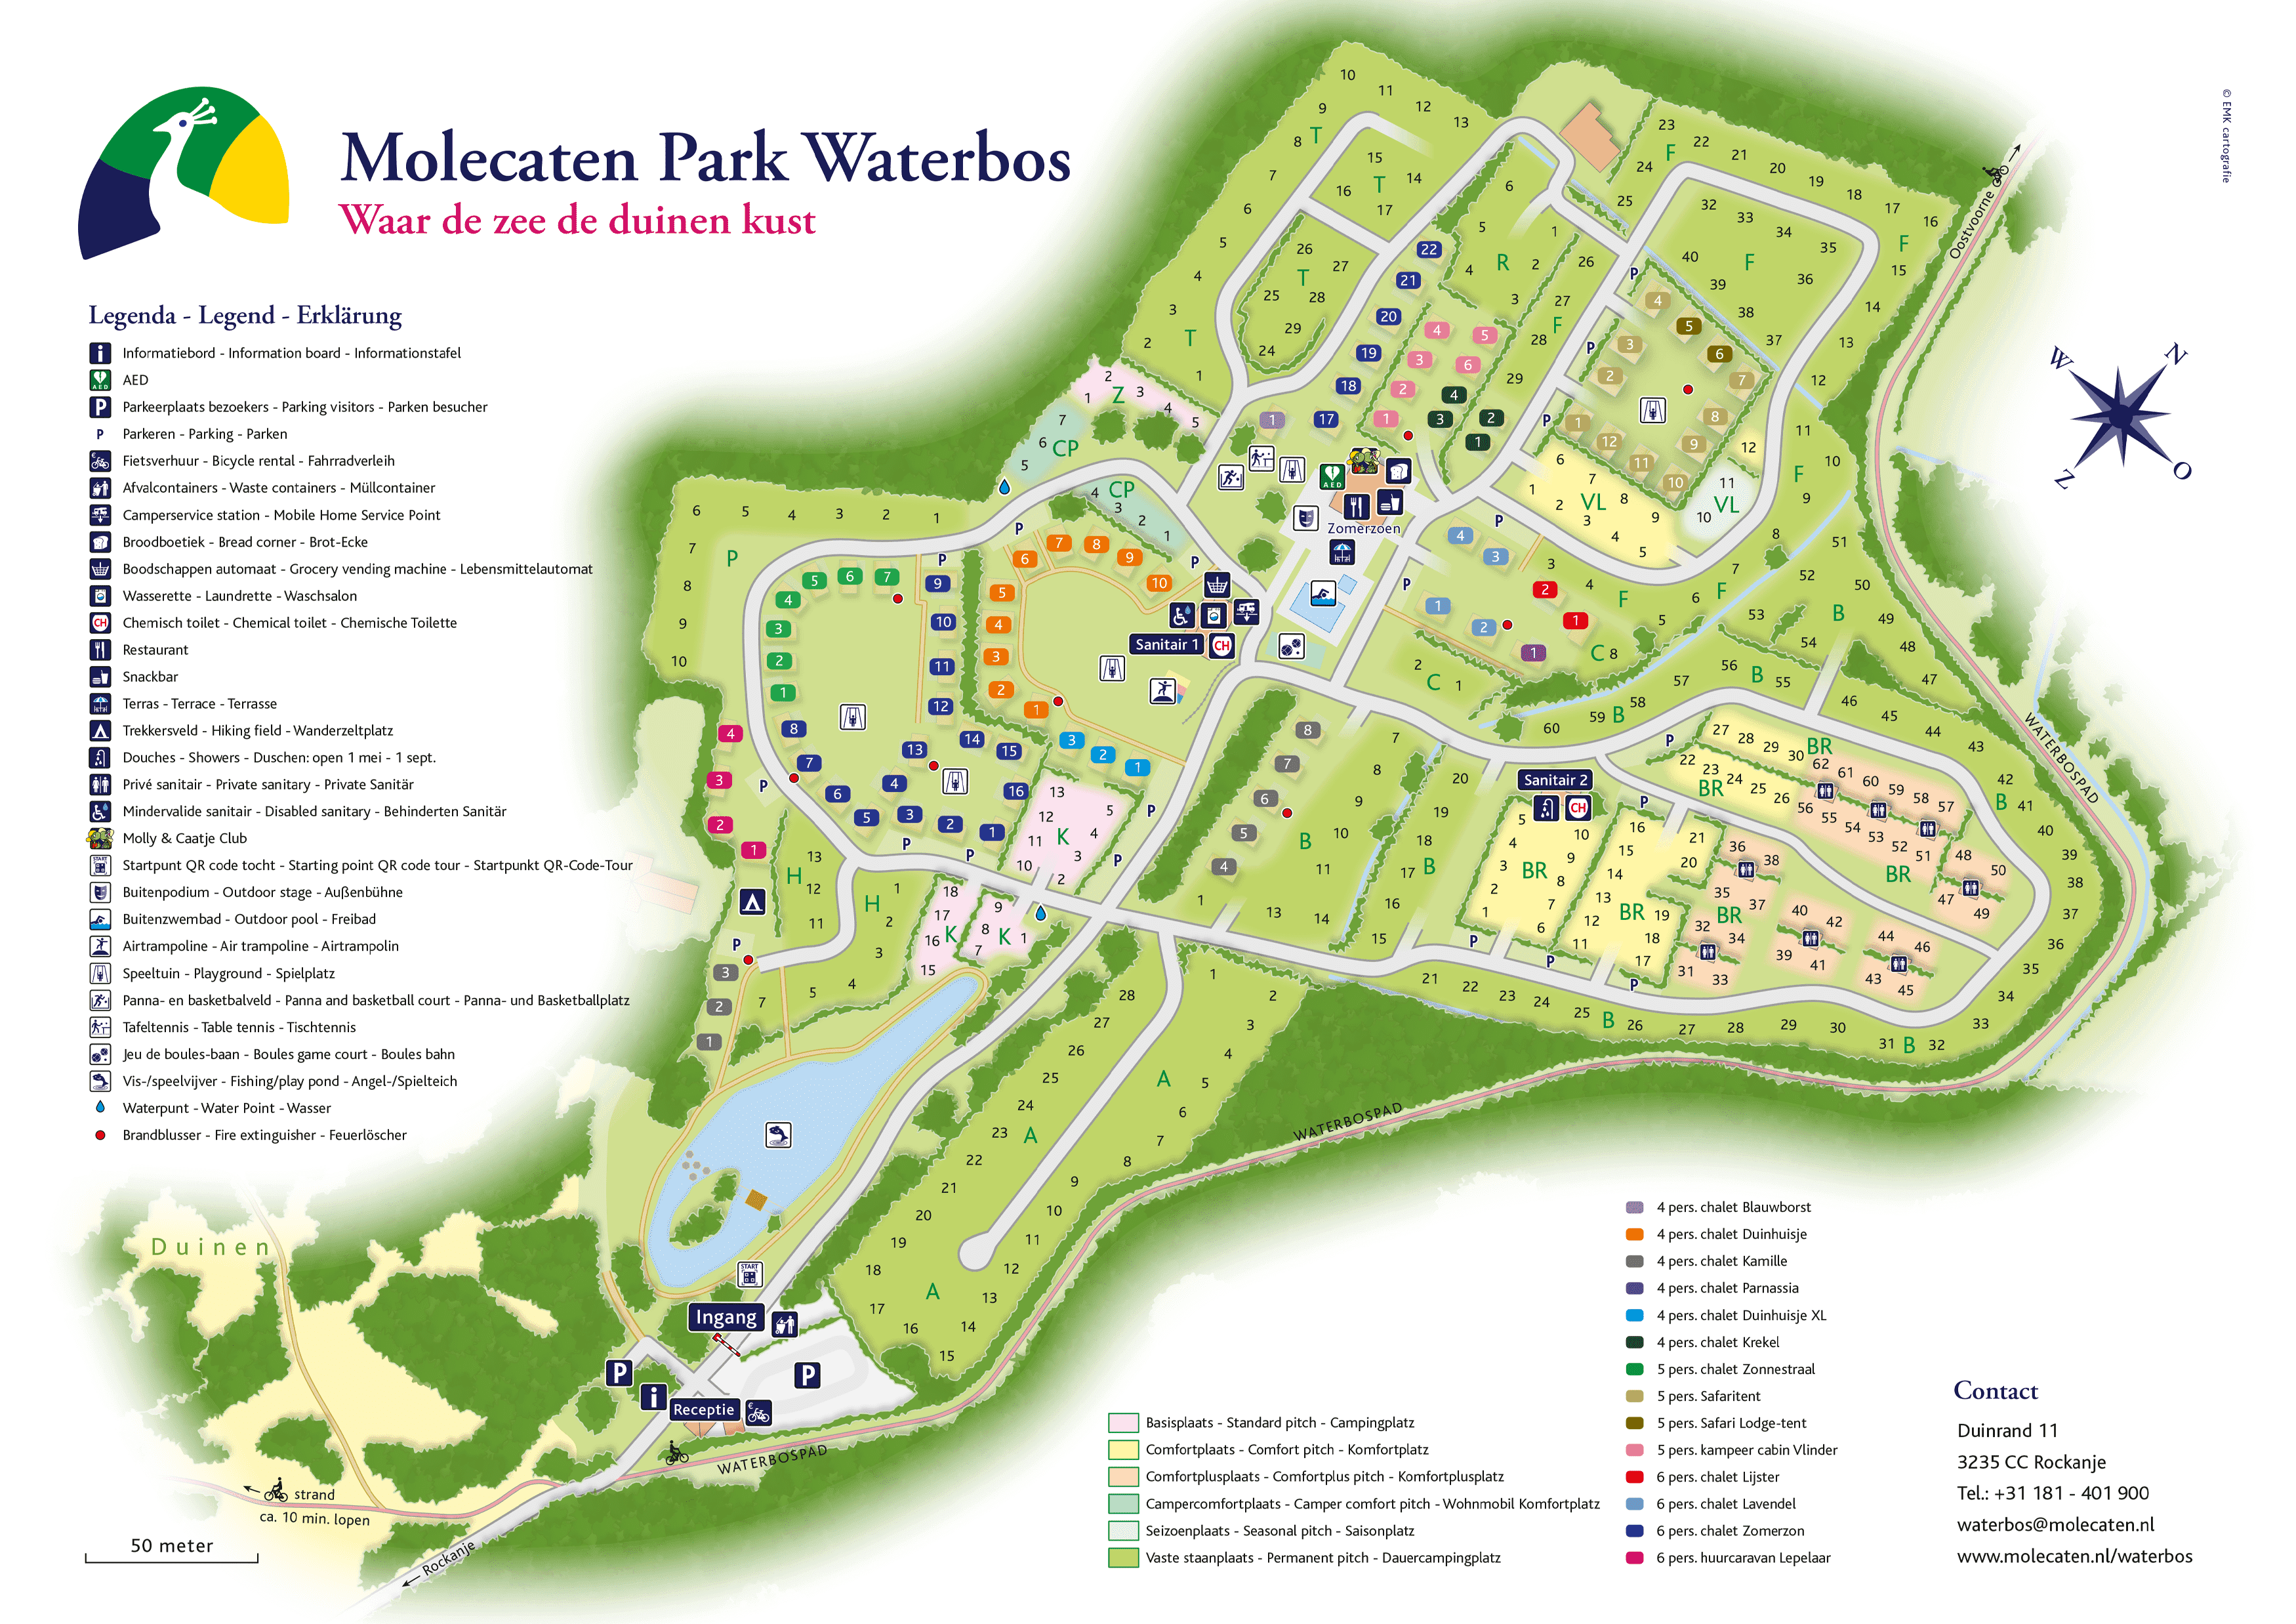 Molecaten Park Waterbos accommodation.parkmap.alttext